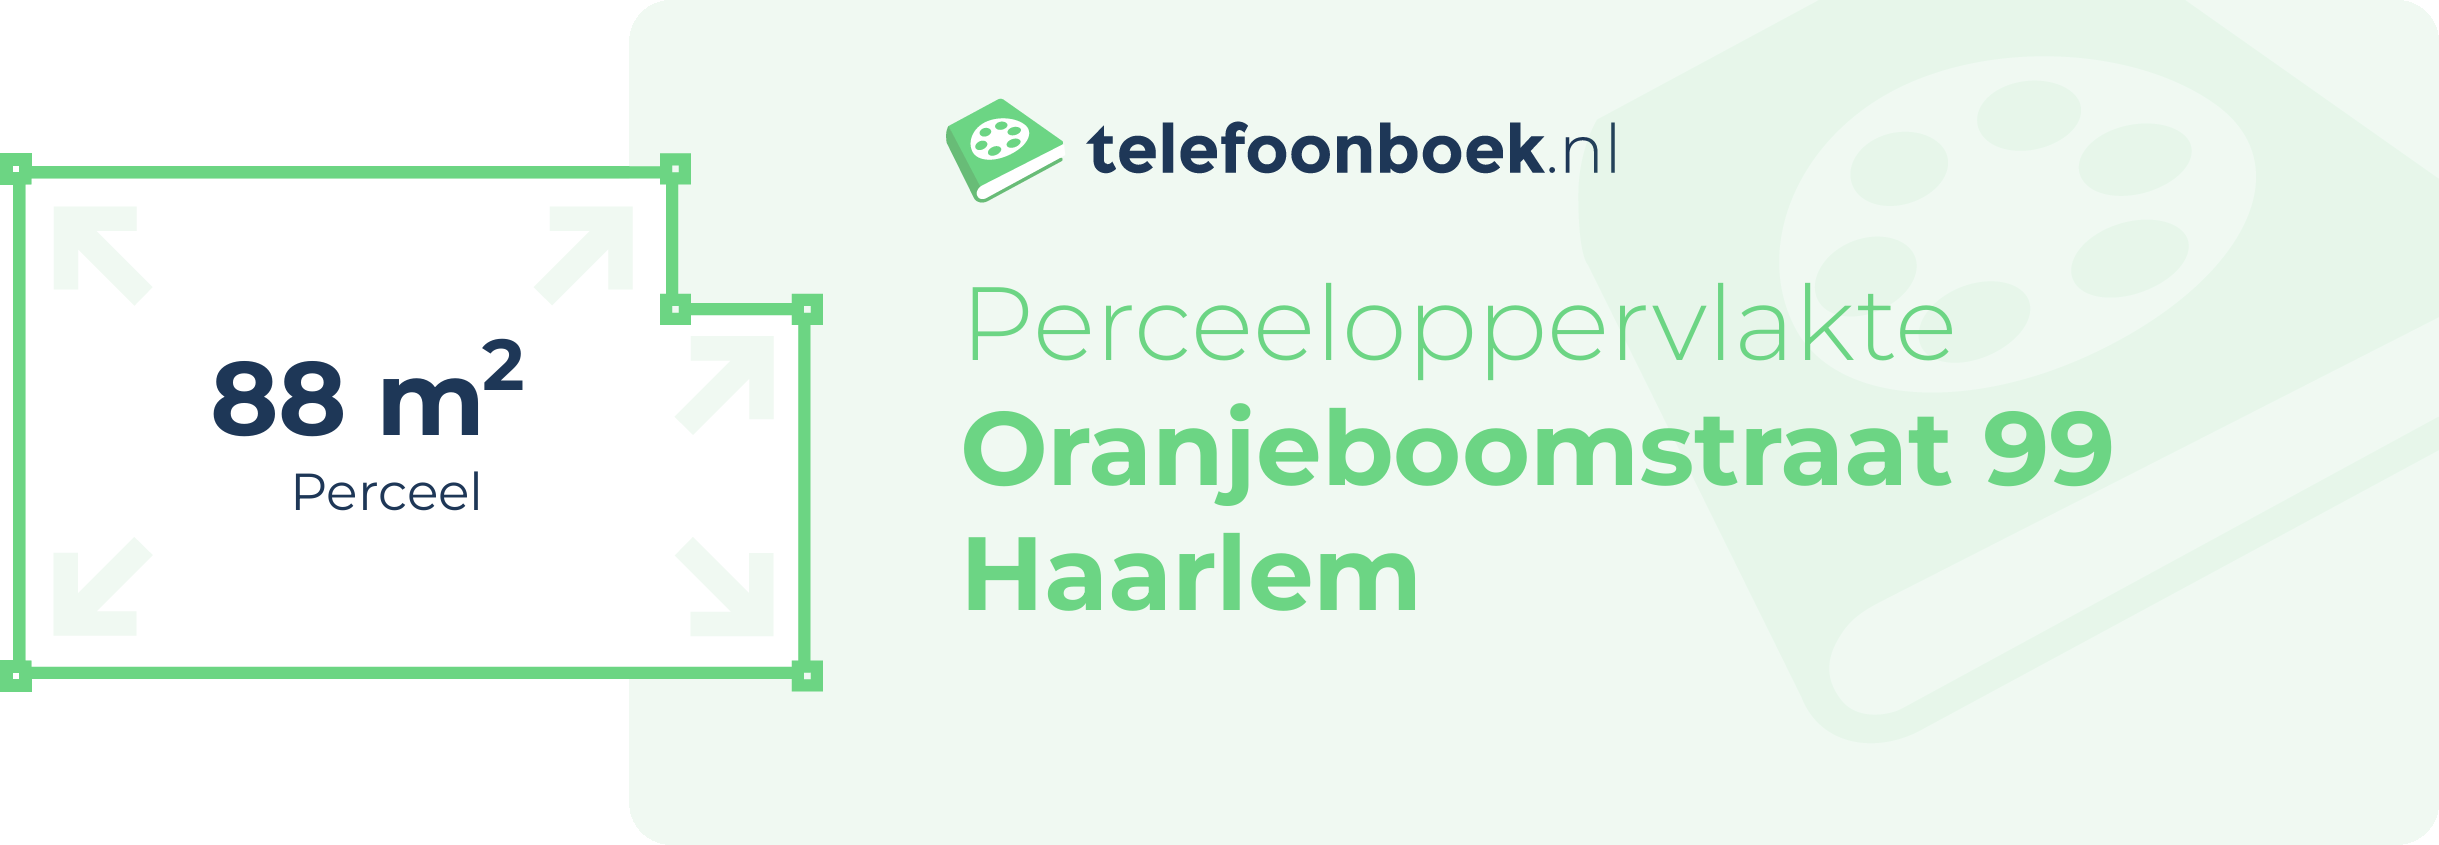 Perceeloppervlakte Oranjeboomstraat 99 Haarlem